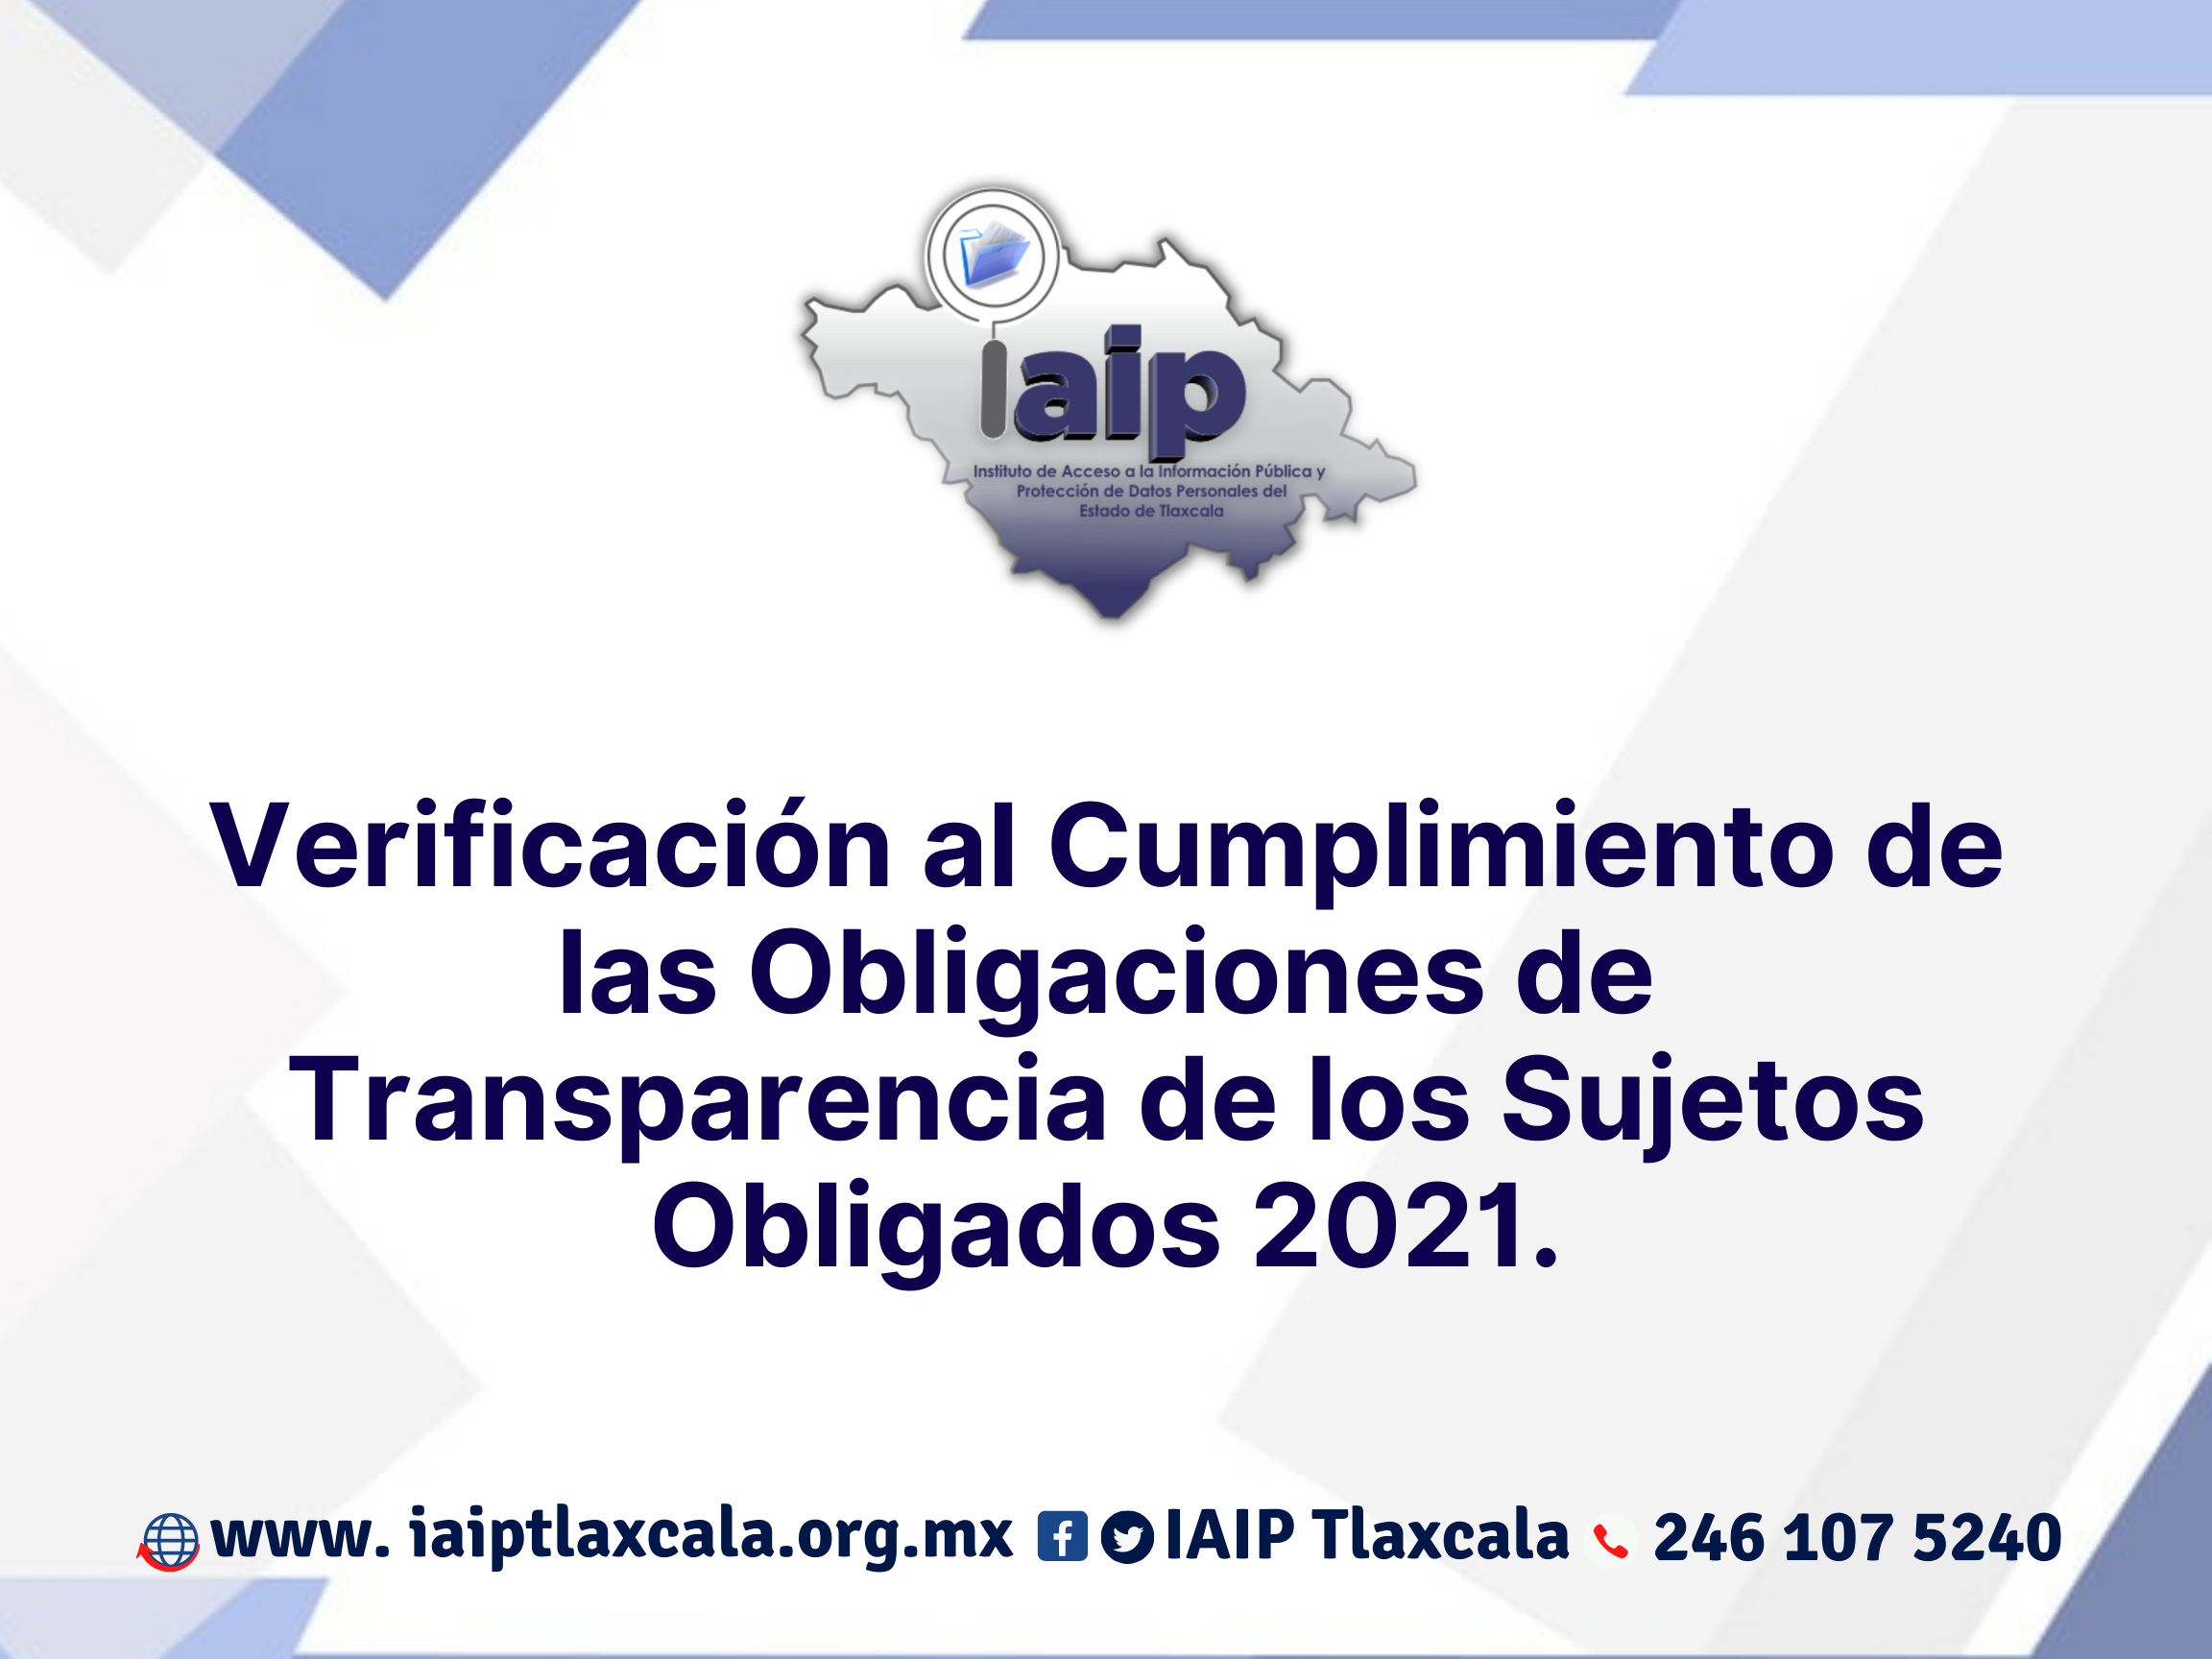 Comisiones de Agua, Partidos Políticos y Ayuntamientos, los más omisos en transparencia: IAIP